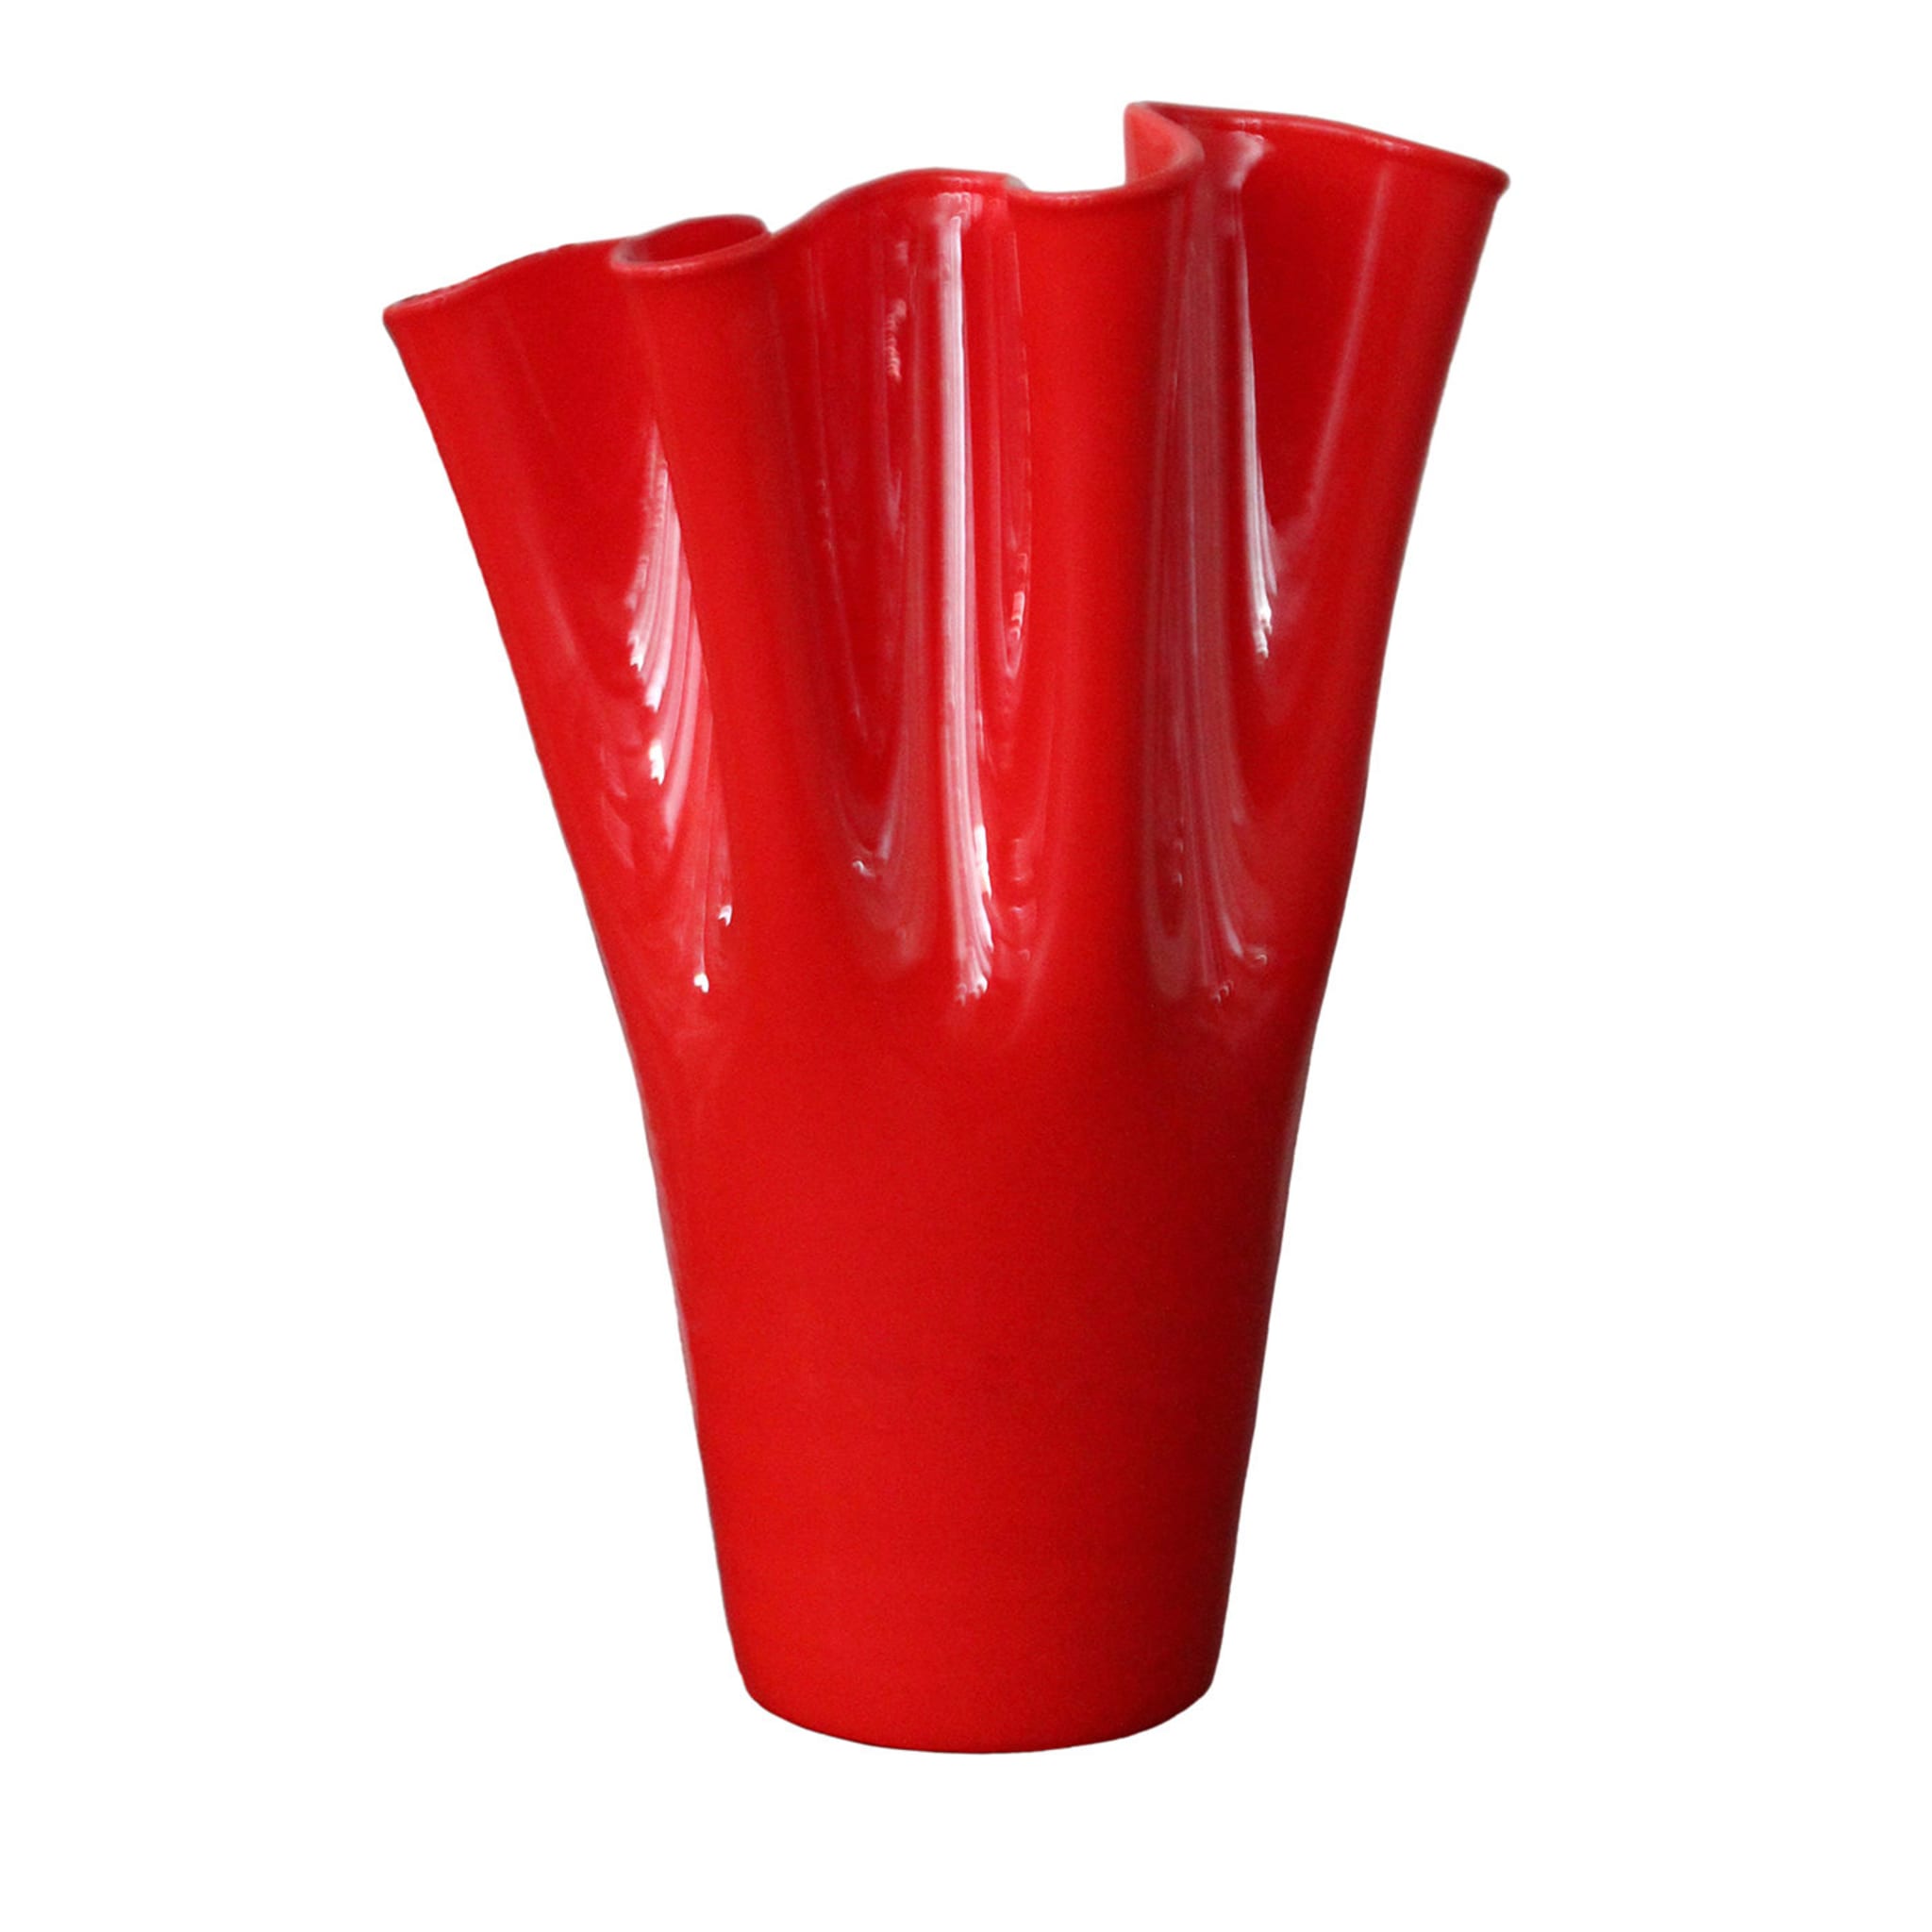 Vase rouge Velluto de Fabio Casali - Vue principale